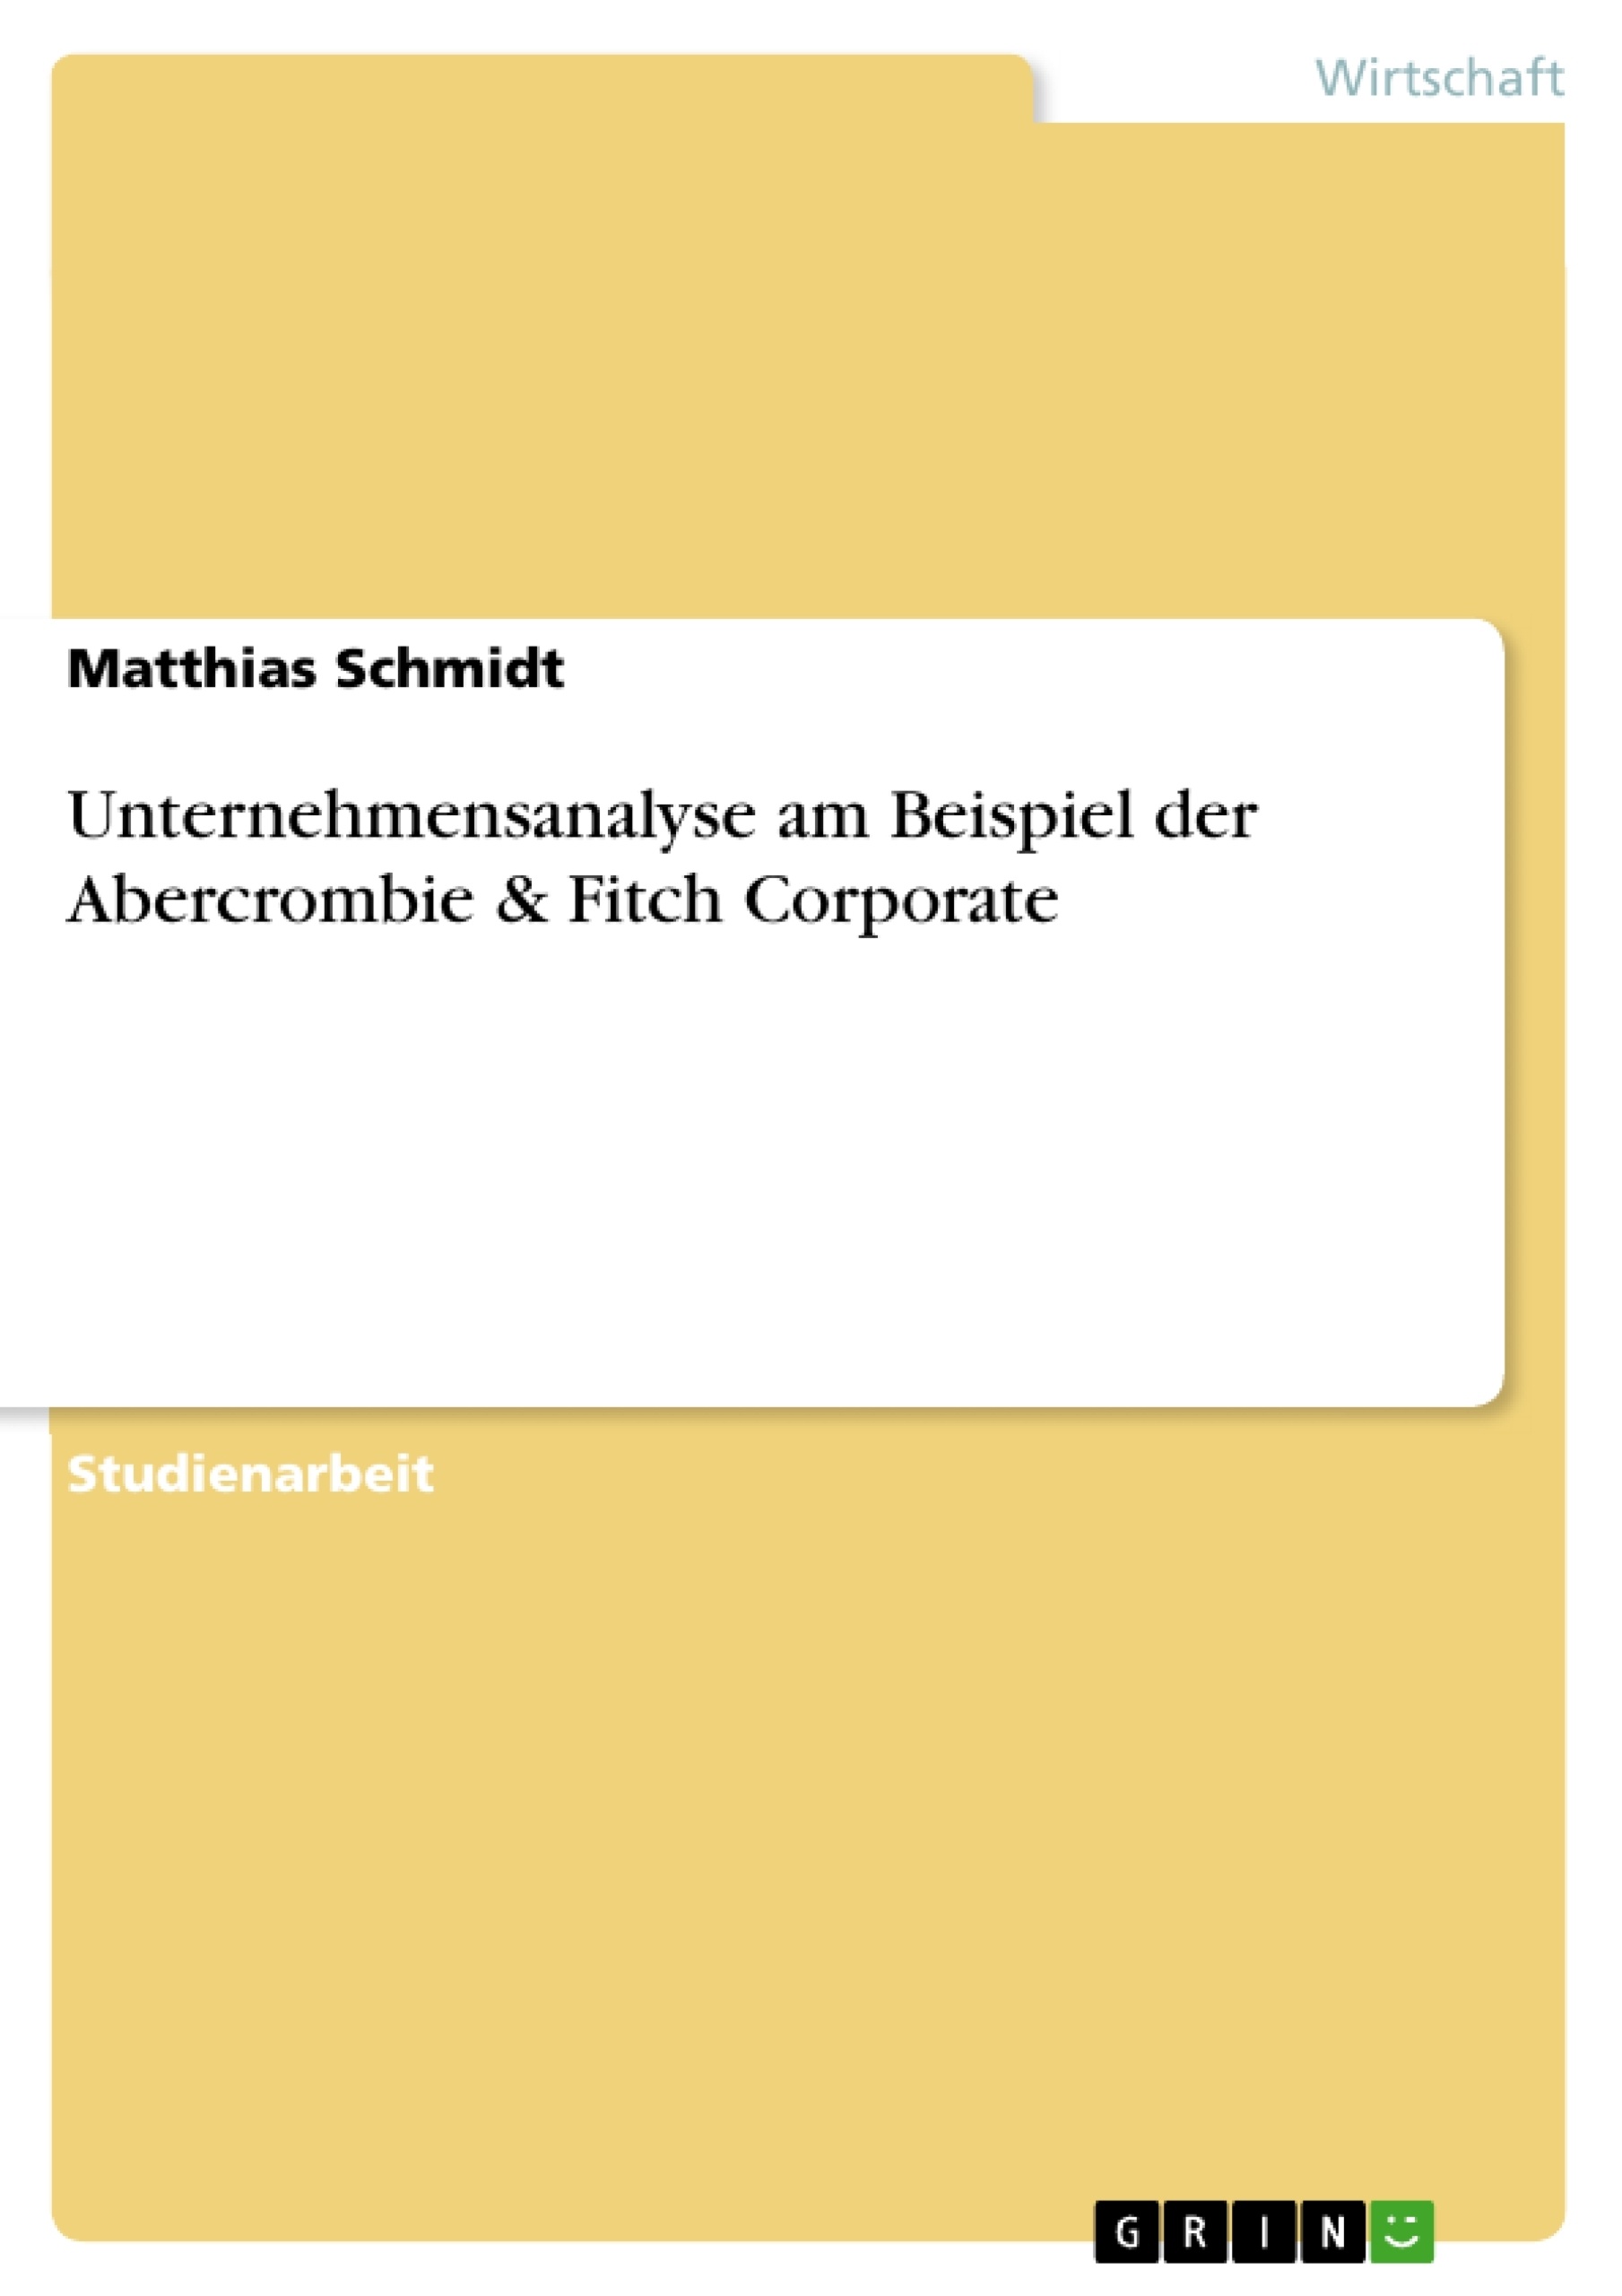 Title: Unternehmensanalyse am Beispiel der Abercrombie & Fitch Corporate